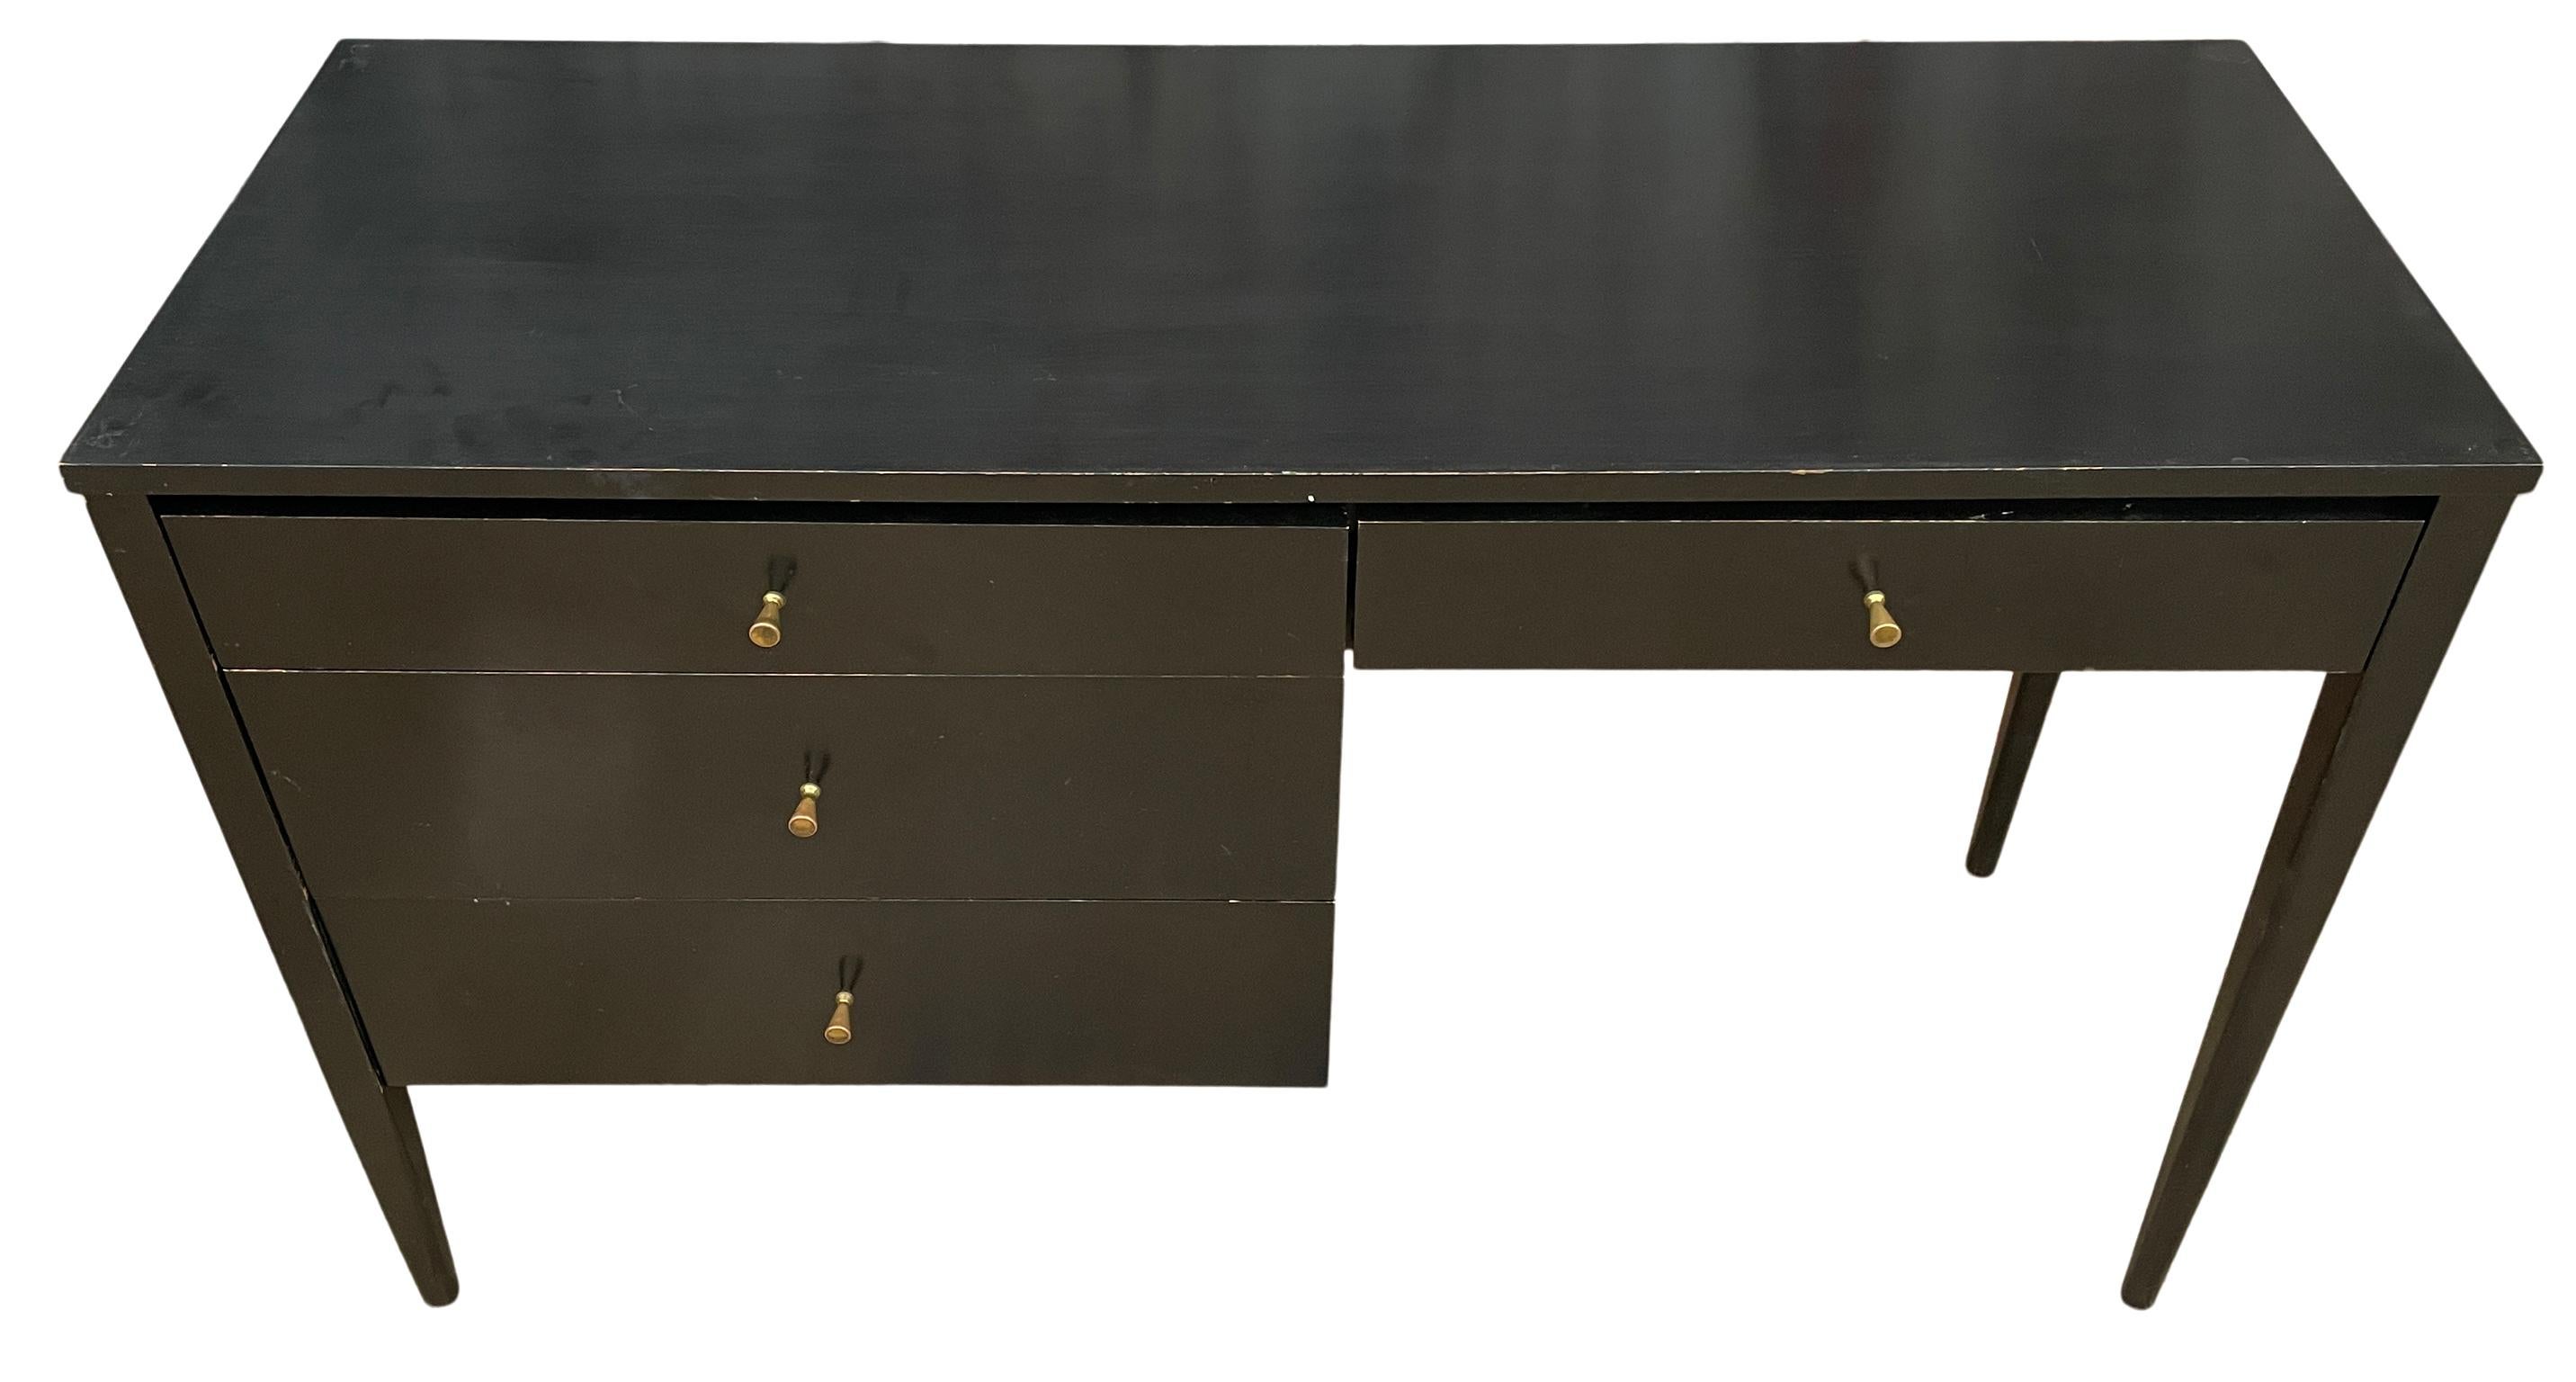 Schöne Paul McCobb Planner Group #1567 vier Schublade Schreibtisch massivem Ahorn schwarzes Finish Messing zieht massiven Ahorn. Der Schreibtisch ist in originalem Vintage-Zustand. Sehr schön gestalteter Schreibtisch auf geraden Beinen - ganz aus